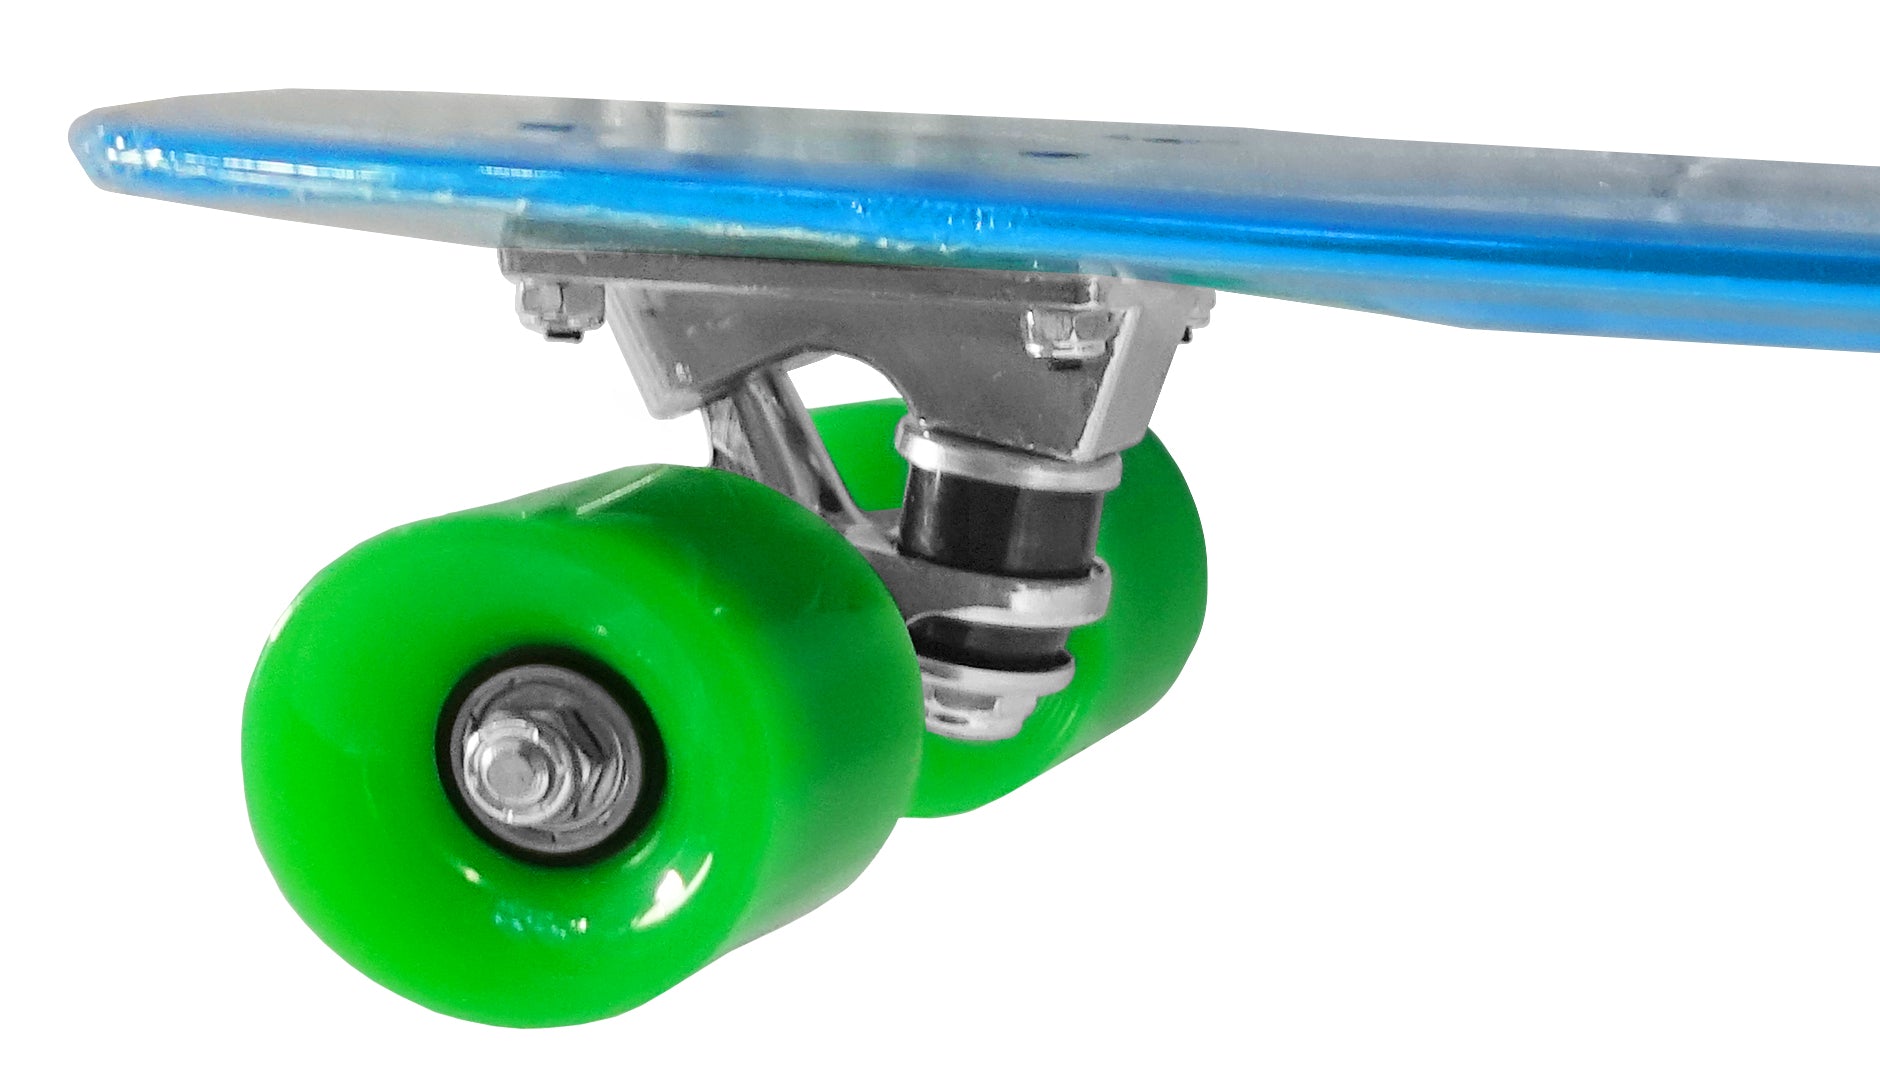 Ryde Retro Skateboard - Bleu/Vert